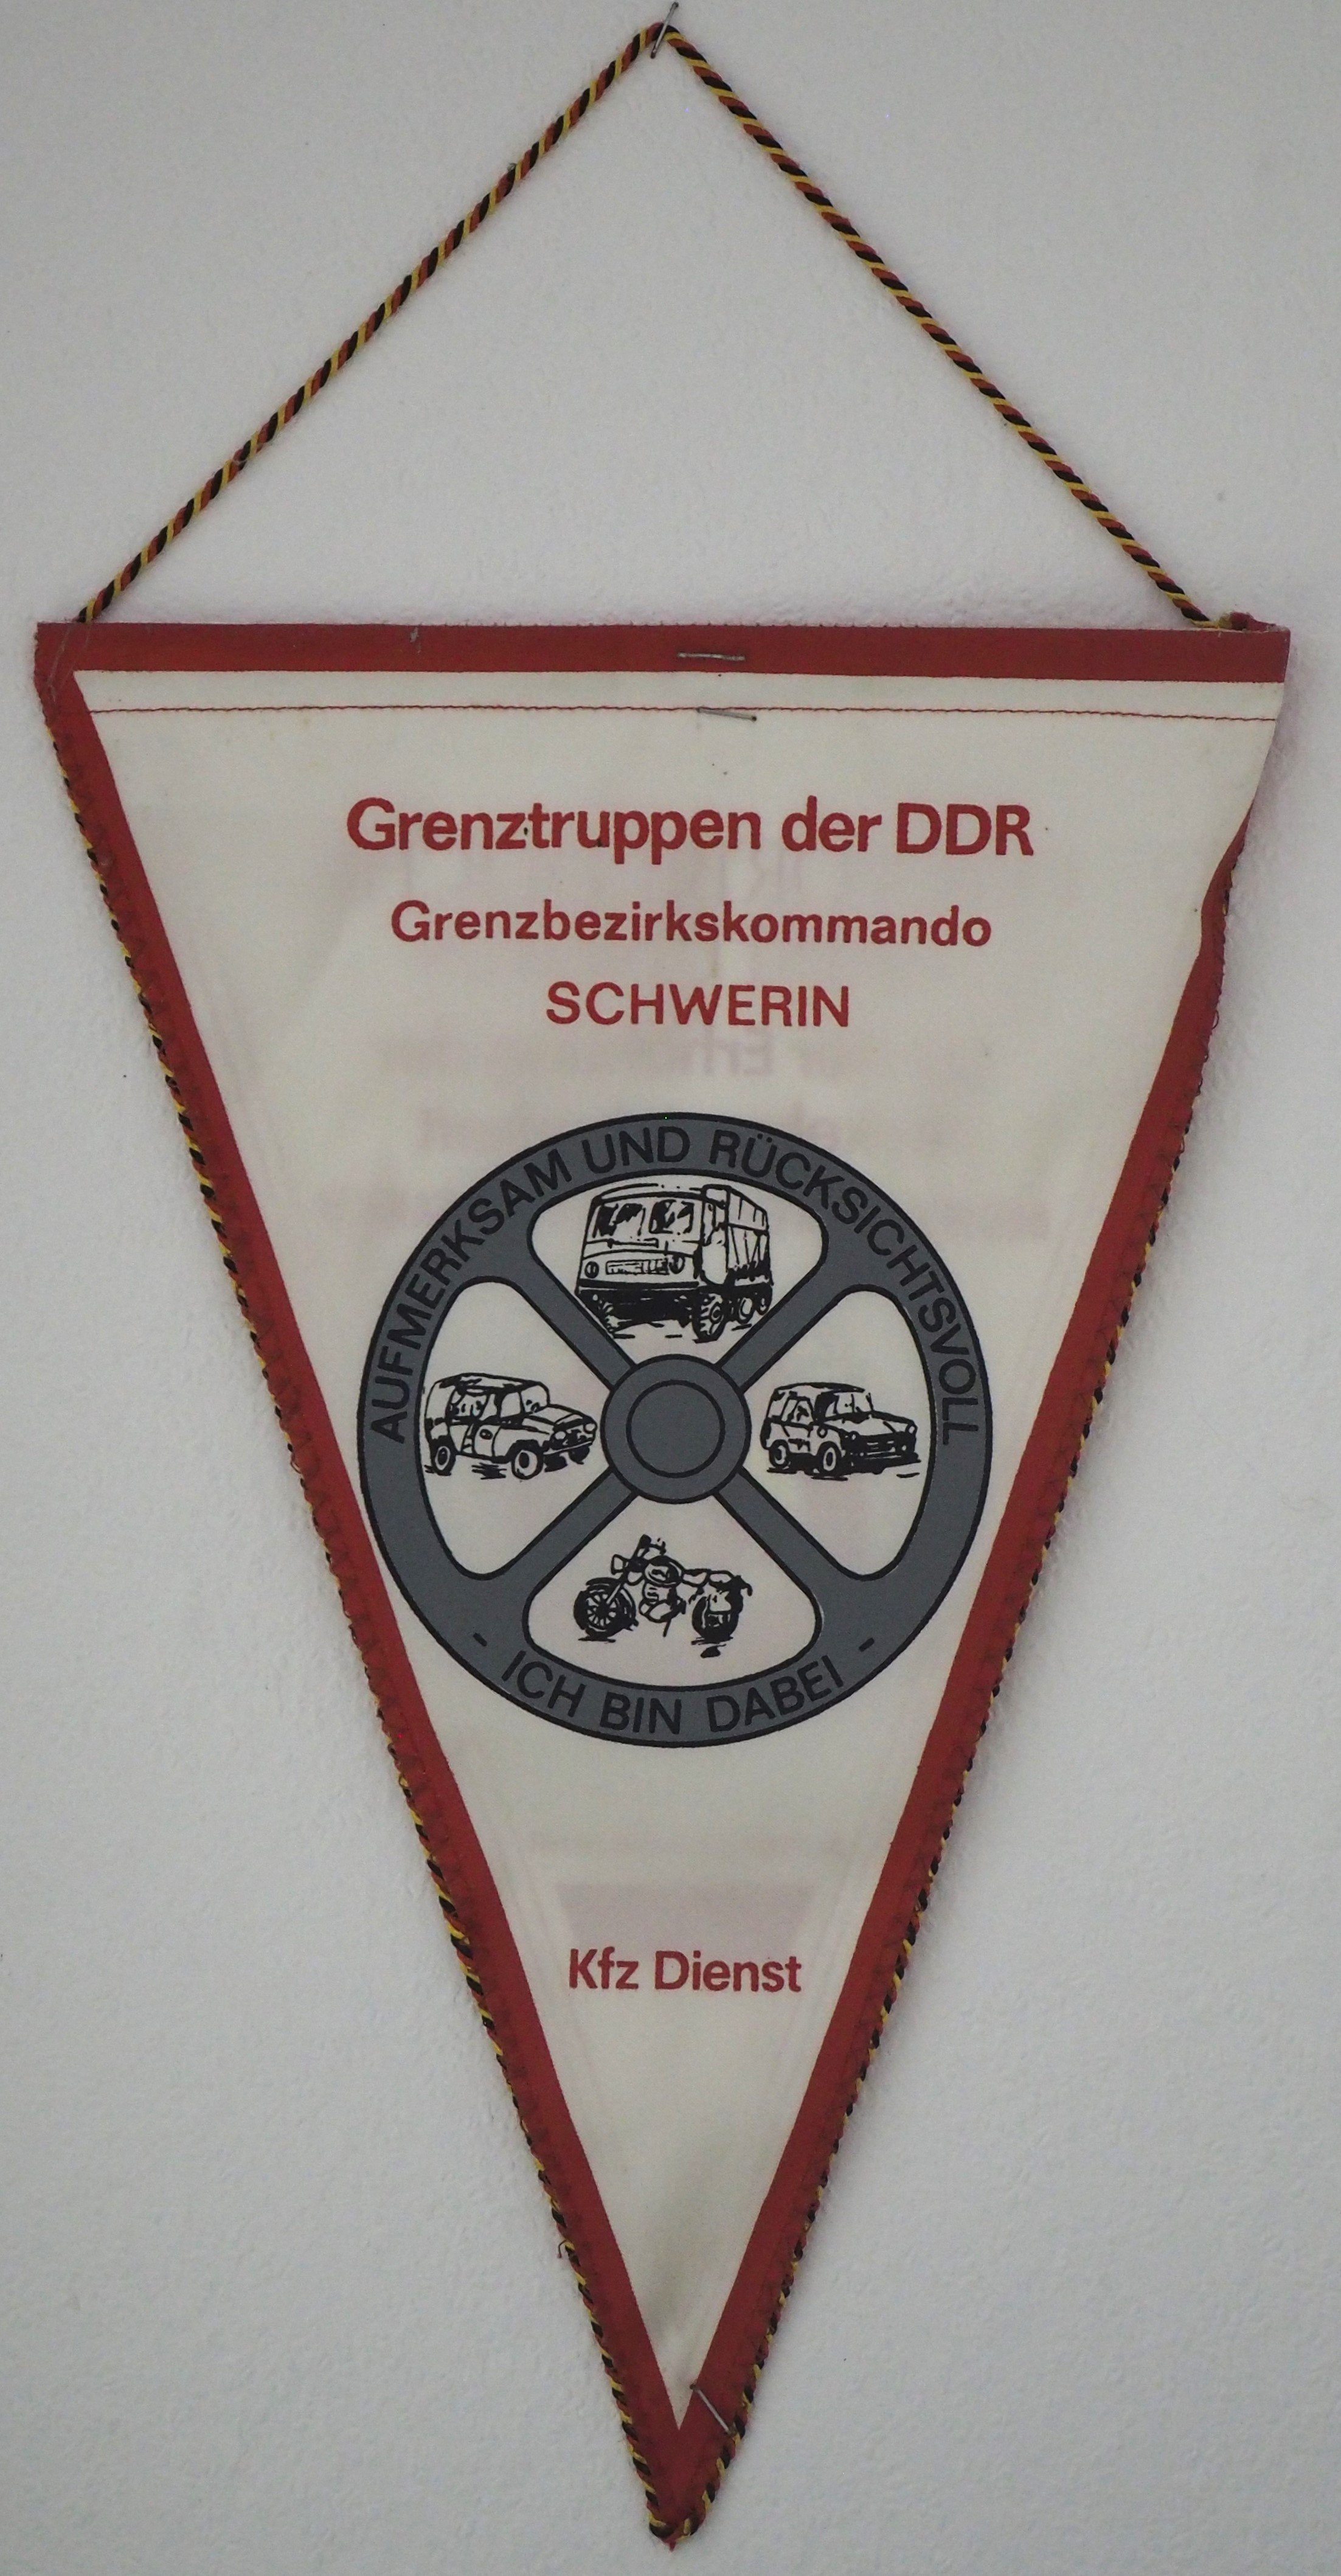 Grenztruppen der DDR, Grenzbezirkskommando Schwerin: Kfz-Dienst (DDR Geschichtsmuseum im Dokumentationszentrum Perleberg CC BY-SA)